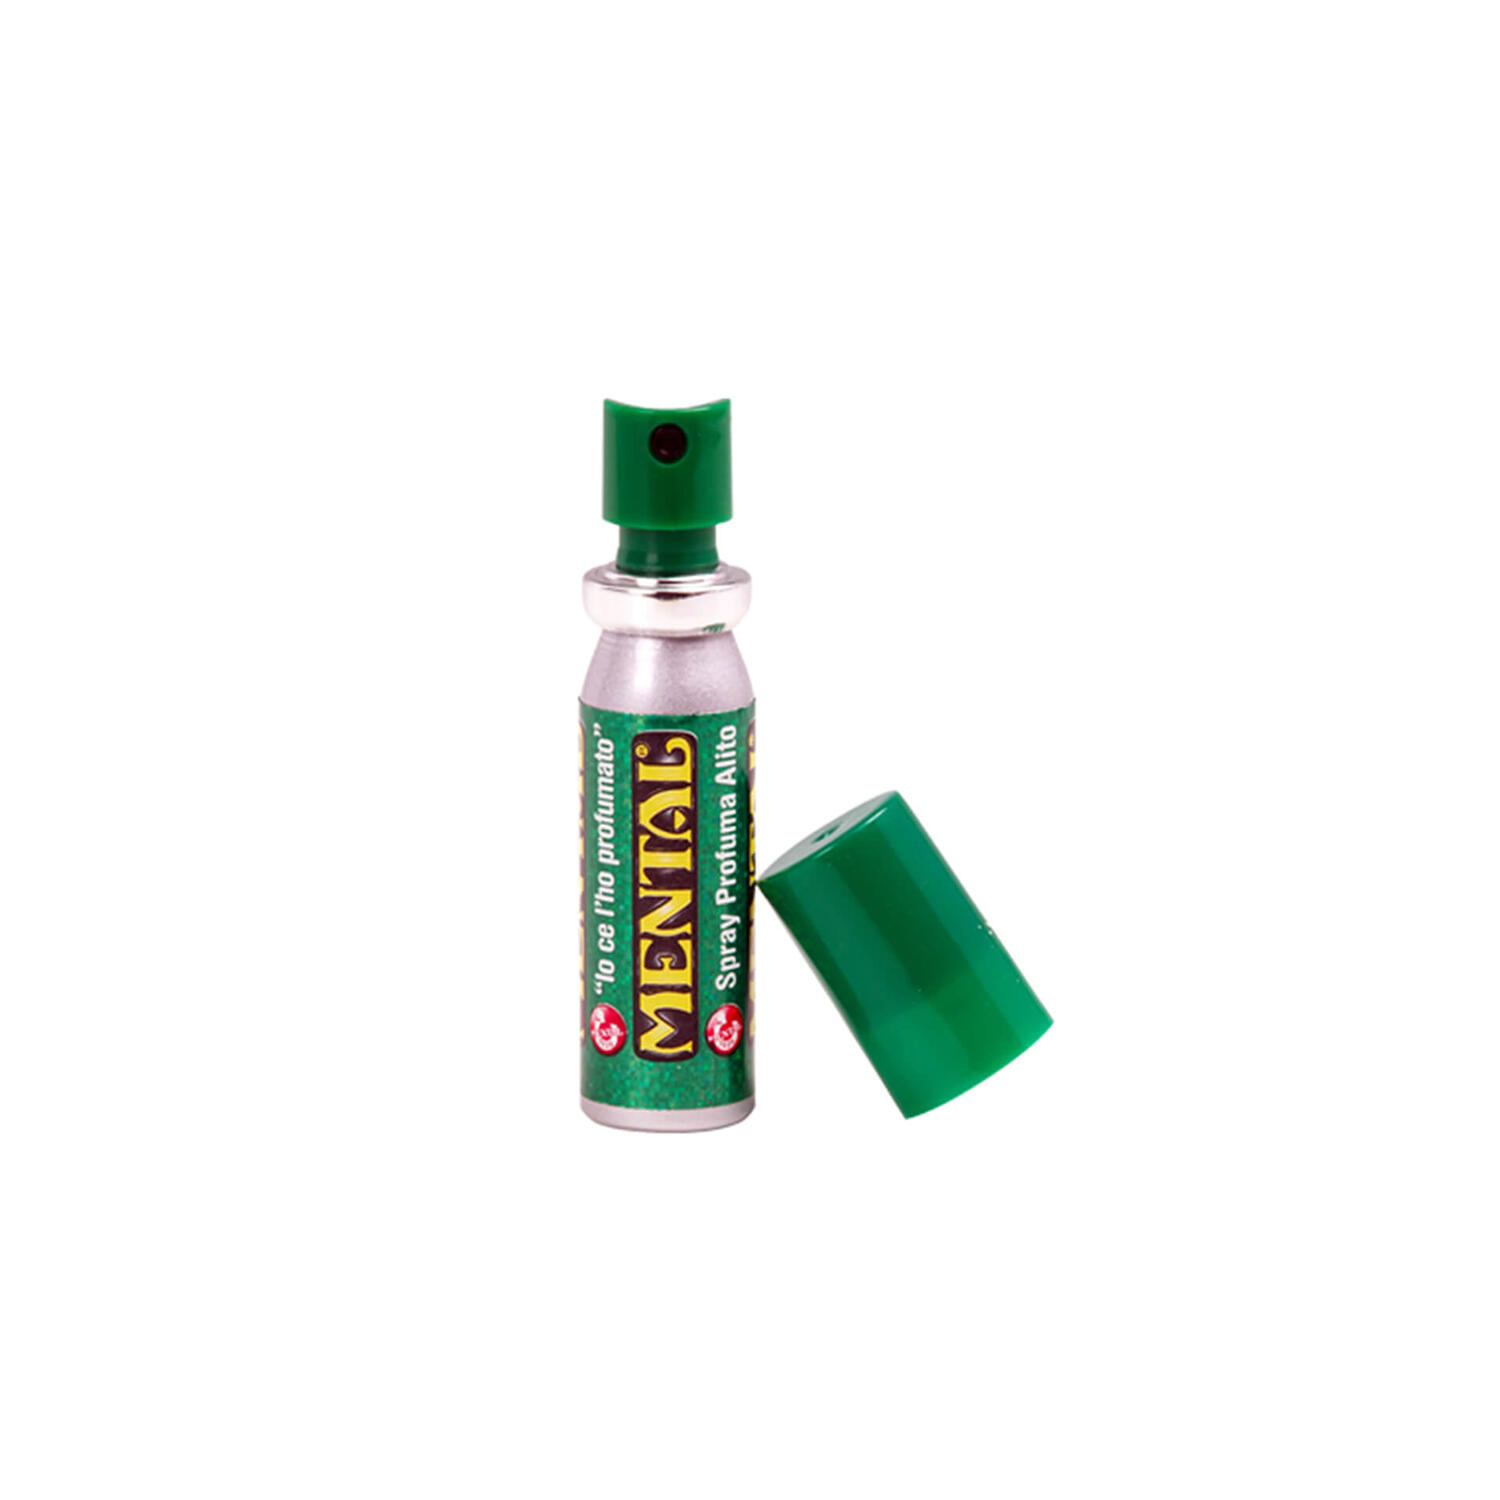 Spray Mental Profuma Alito – spray 18 ml - Confezione da 12PZ - Spray